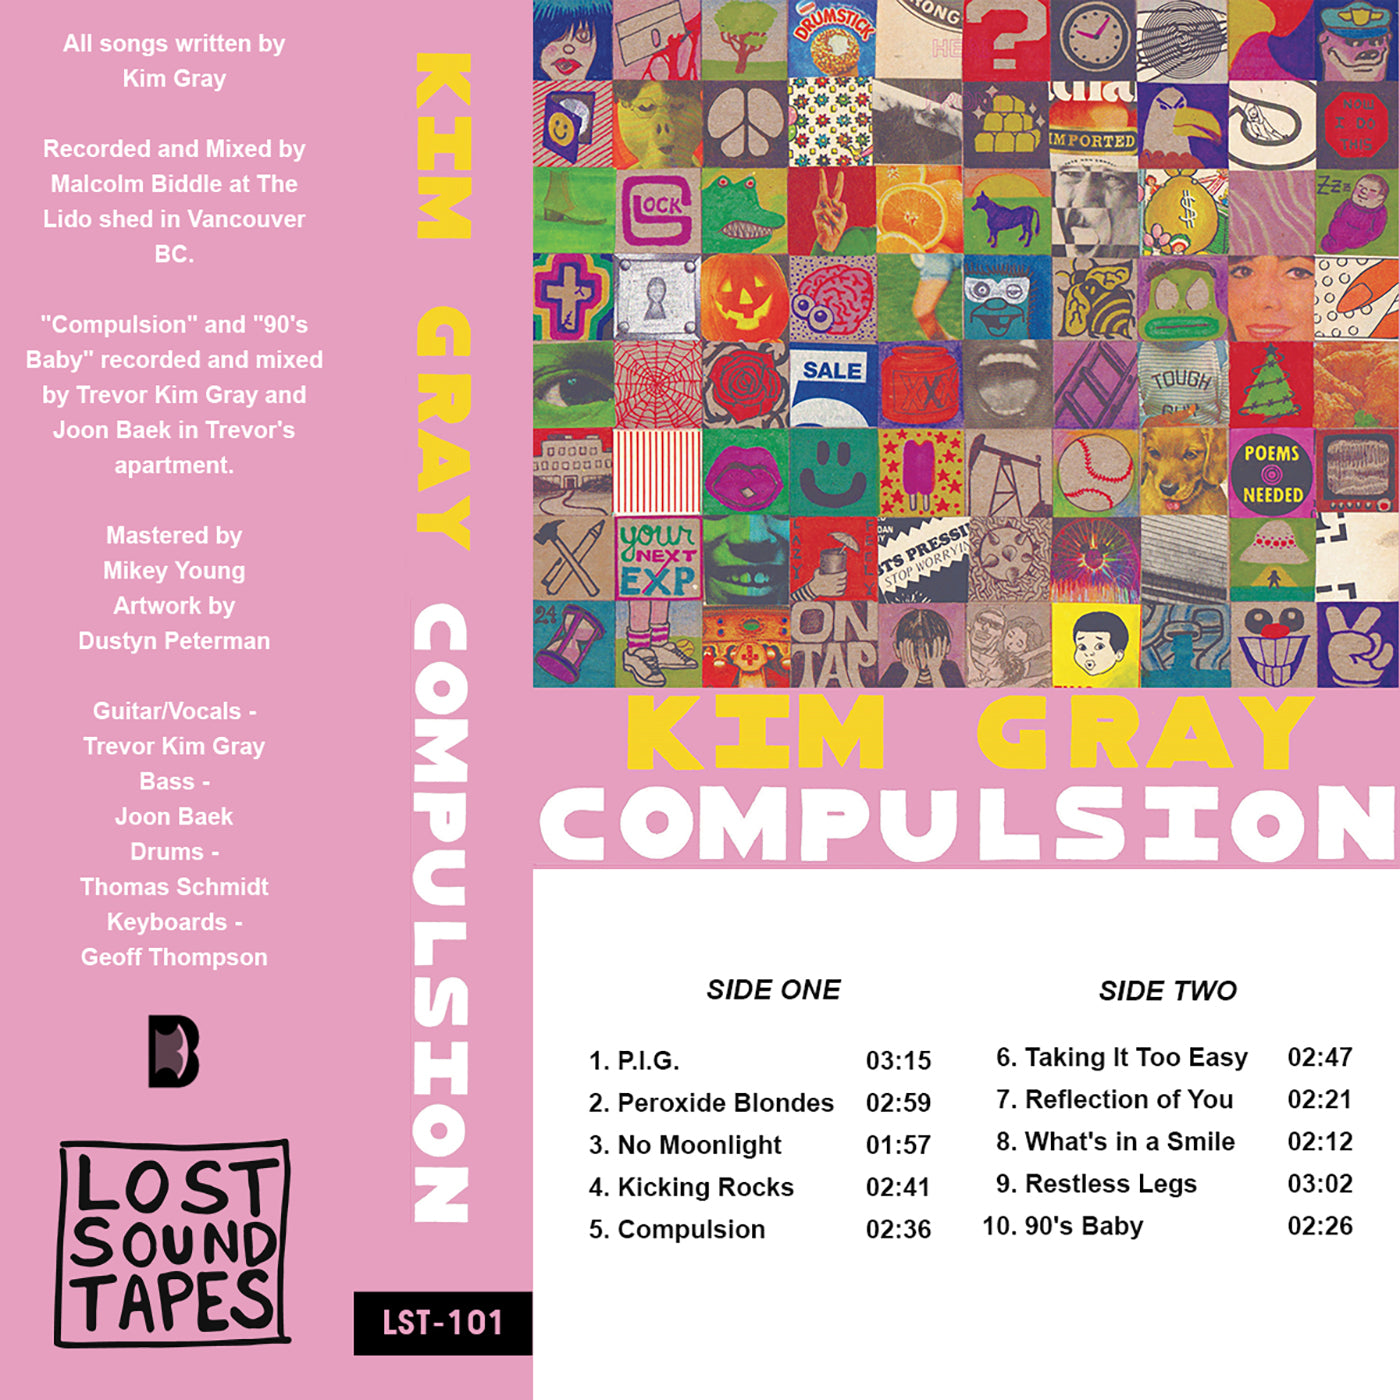 KIM GRAY "Compulsion" cassette tape